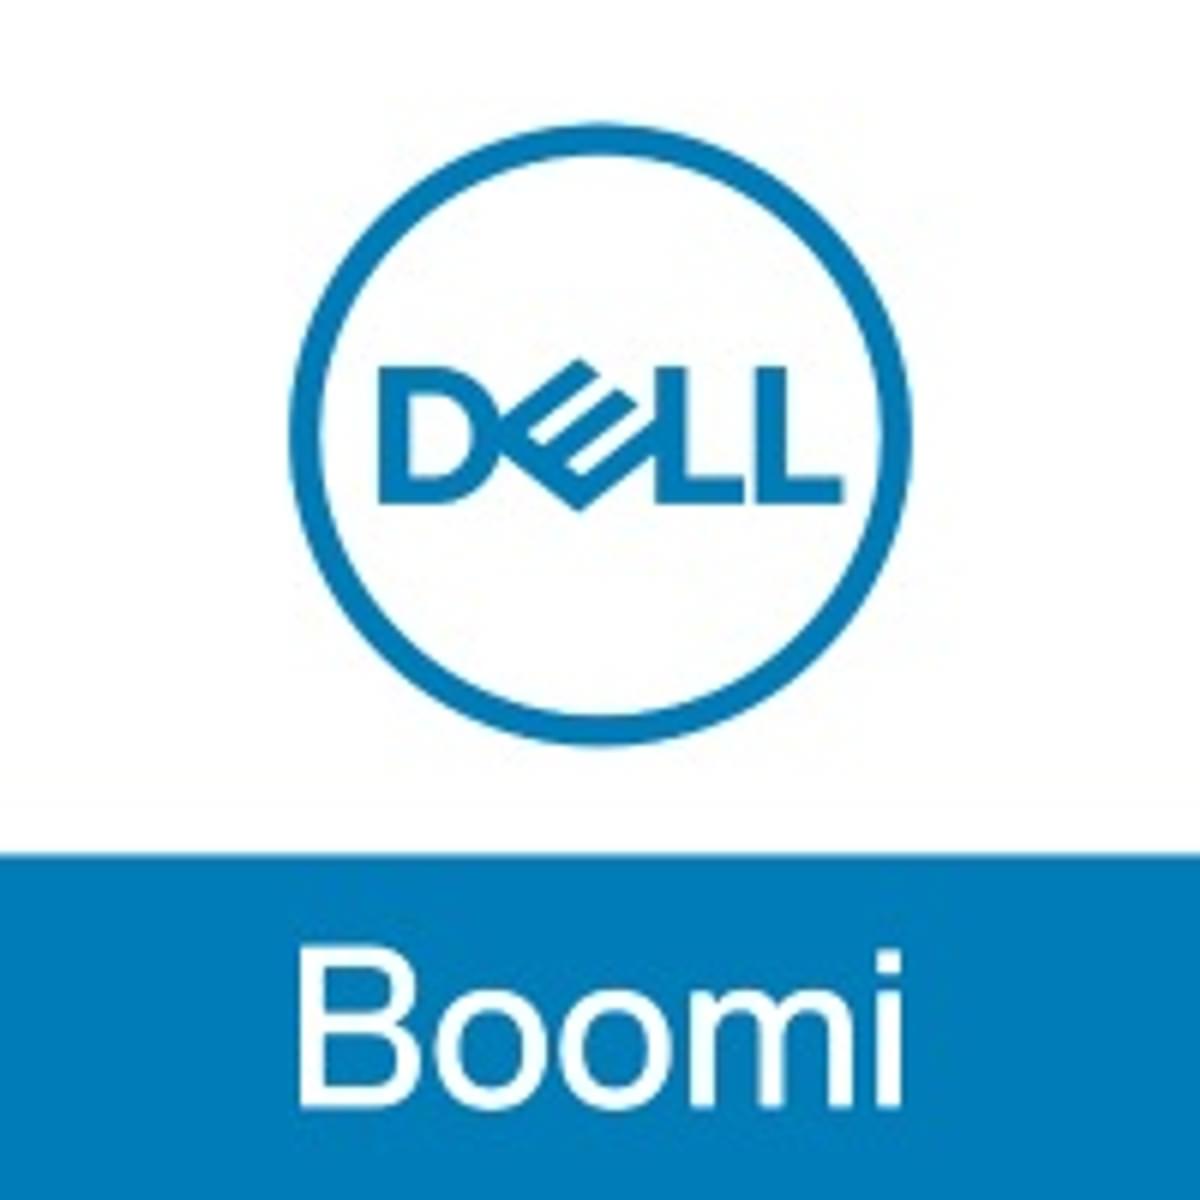 Dell Boomi platform is uitgebreid en getweakt image